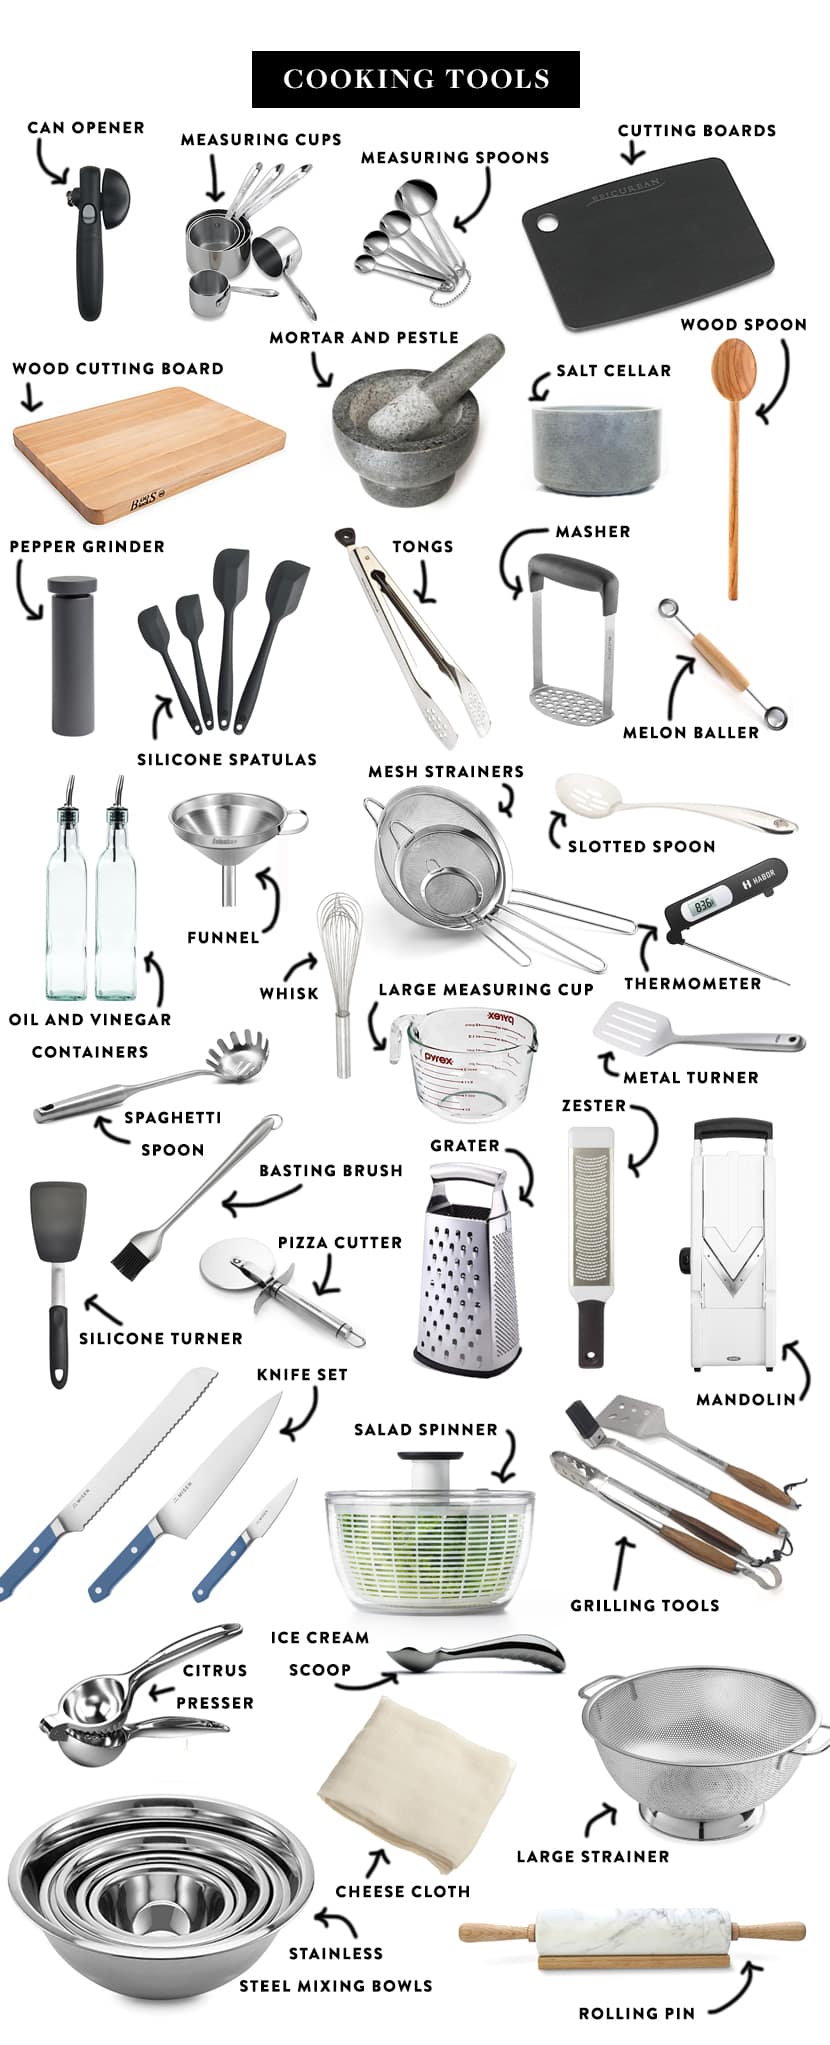 Kitchen_Essentials_Tools.jpg